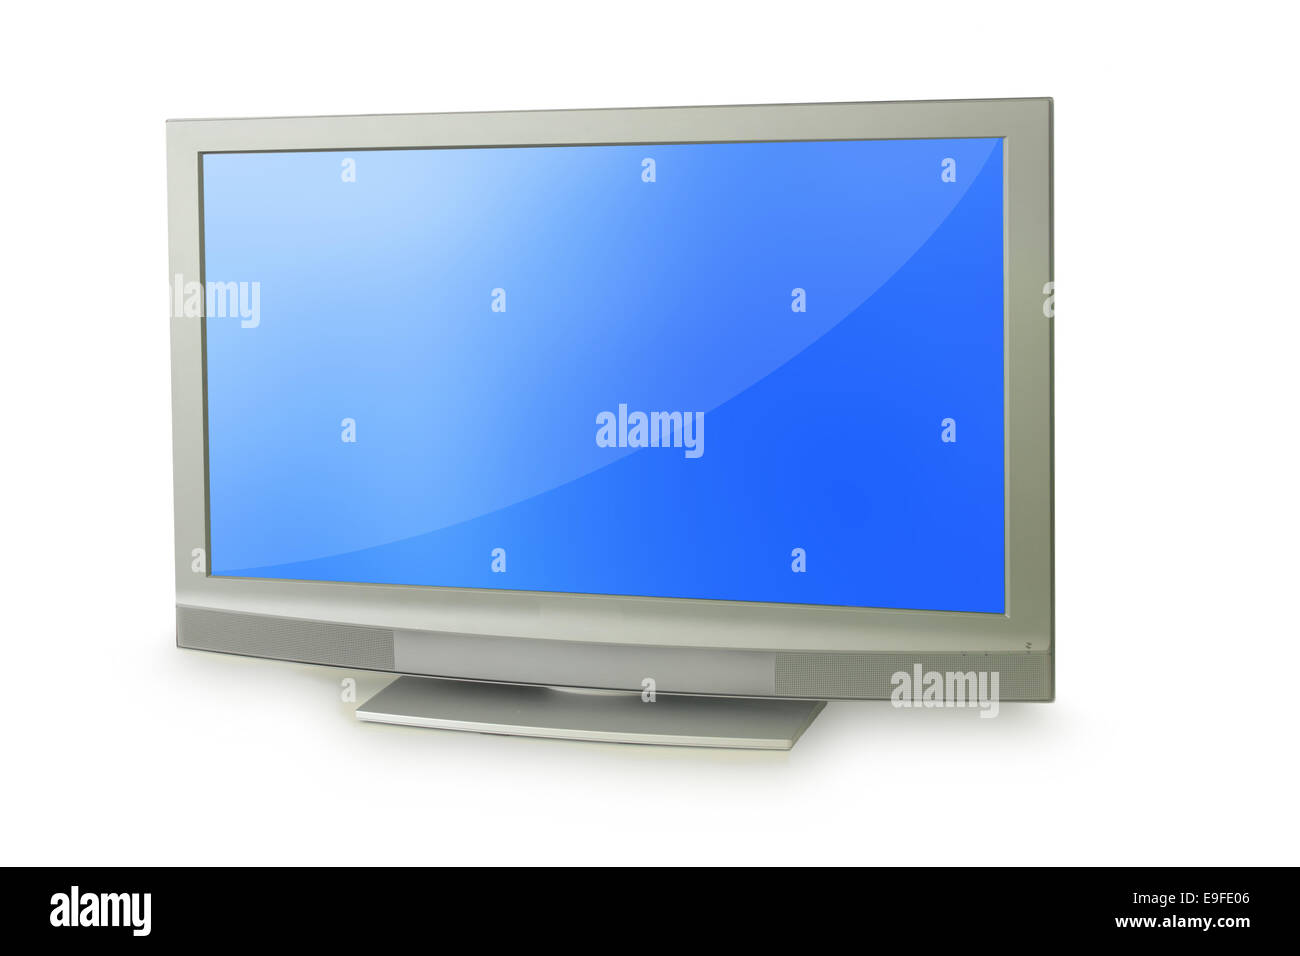 Pequeño televisor de pantalla plana, pantalla LCD panorámica portátil,  televisor LCD de pantalla ancha portátil de 12 pulgadas con control remoto